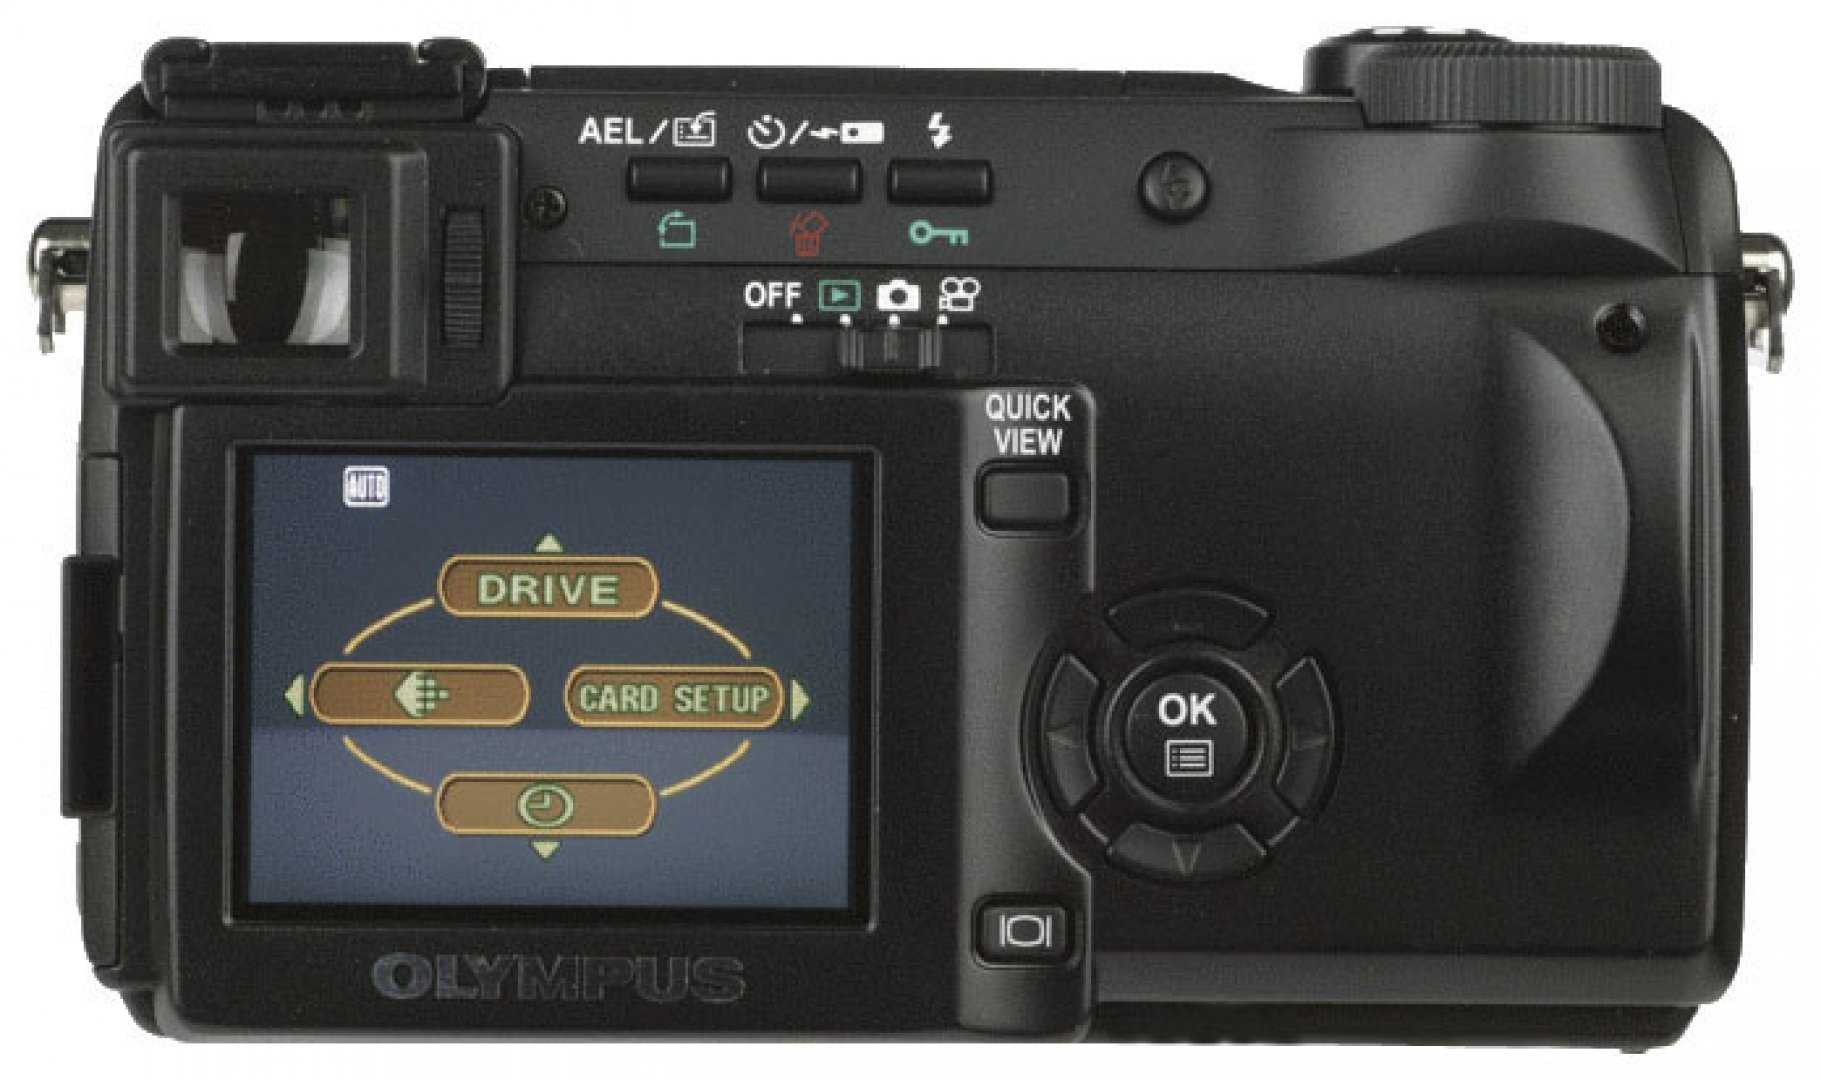 Цифровой фотоаппарат Olympus D-770 - подробные характеристики обзоры видео фото Цены в интернет-магазинах где можно купить цифровую фотоаппарат Olympus D-770